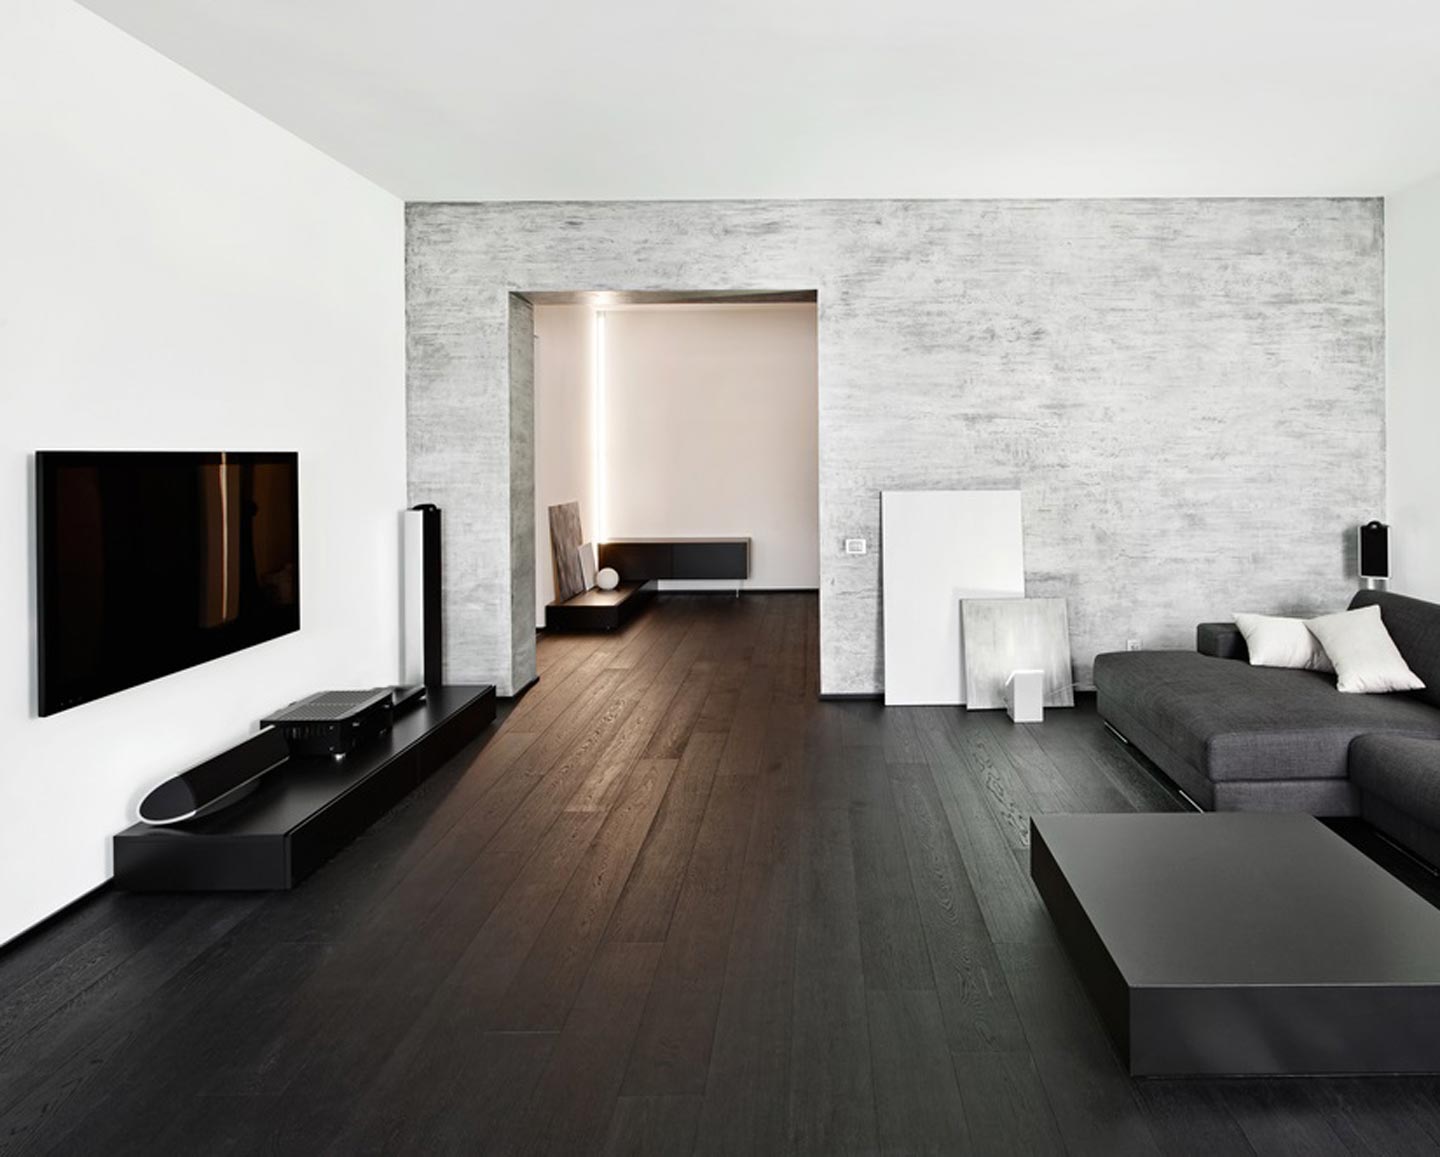 Tamsios medinės grindys salės interjere minimalizmo stiliumi